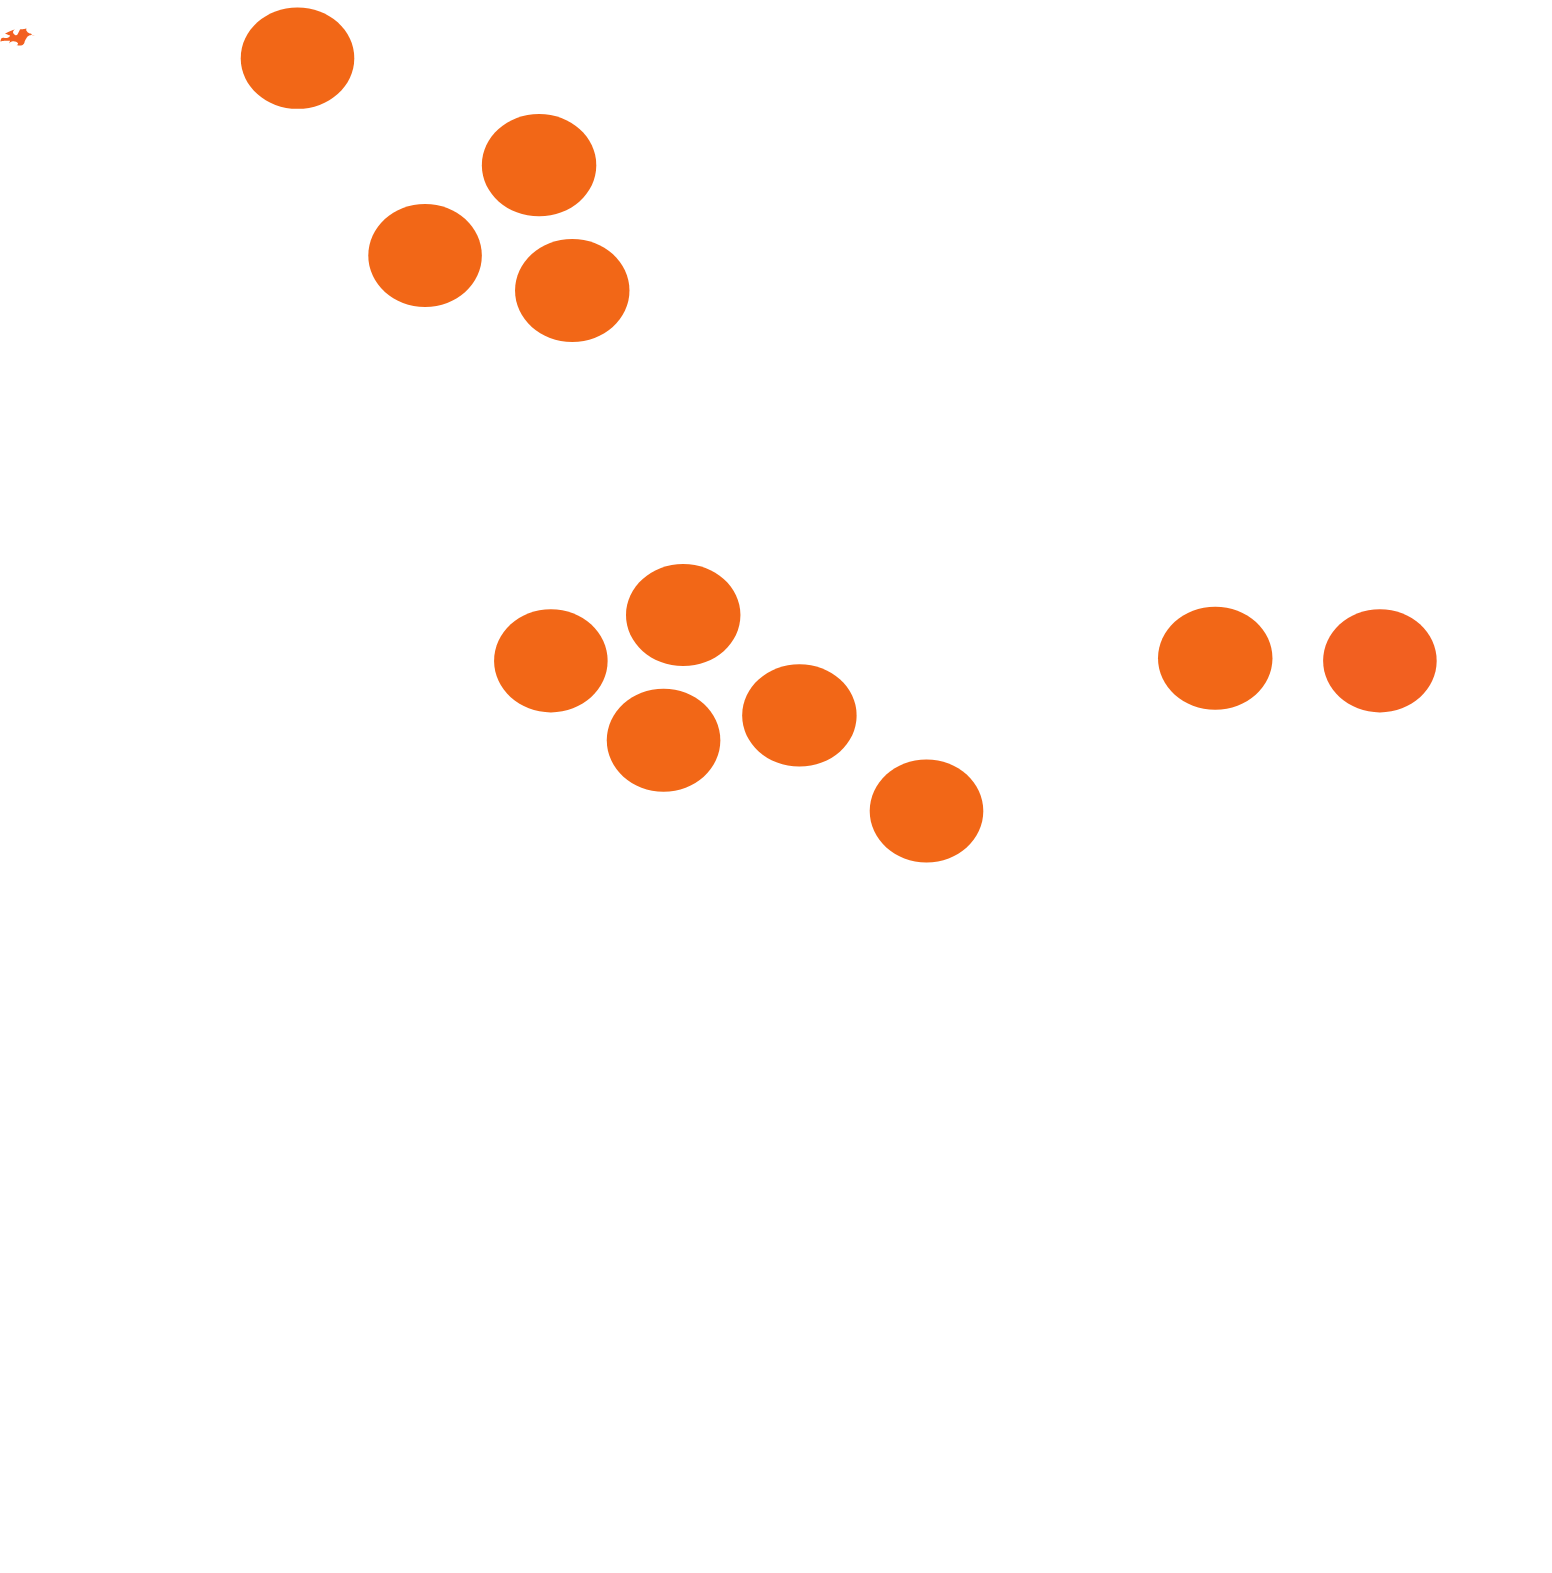 Laramide Resources logo large for dark backgrounds (transparent PNG)